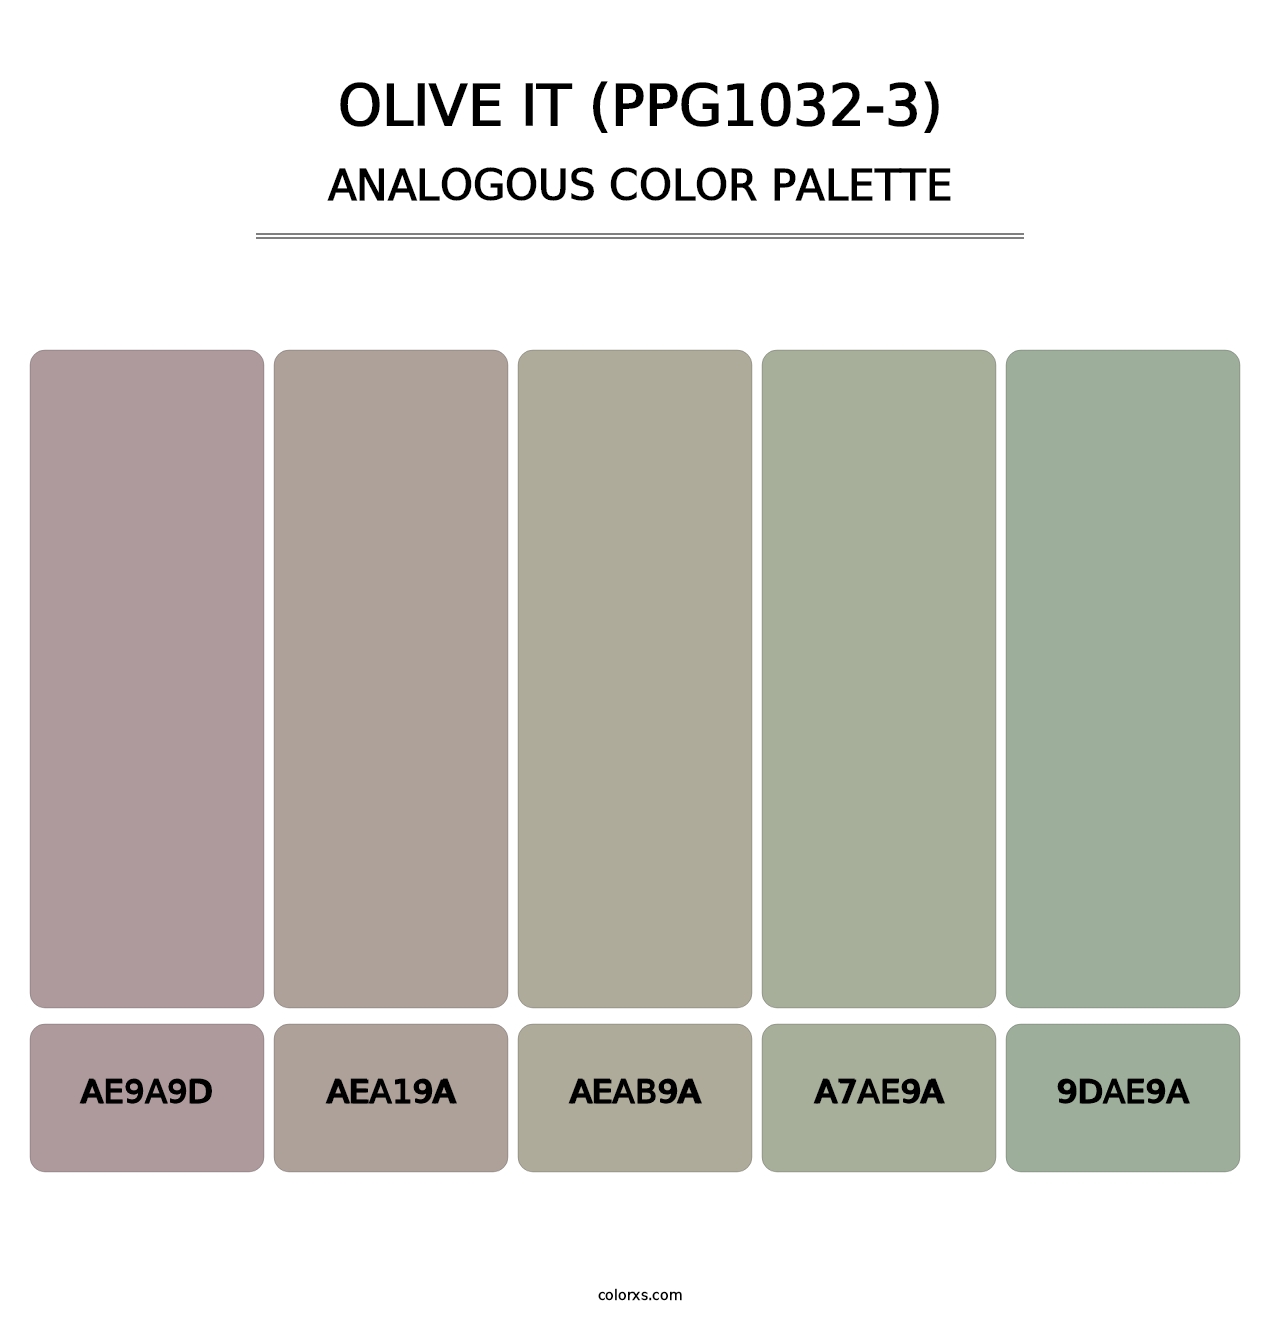 Olive It (PPG1032-3) - Analogous Color Palette